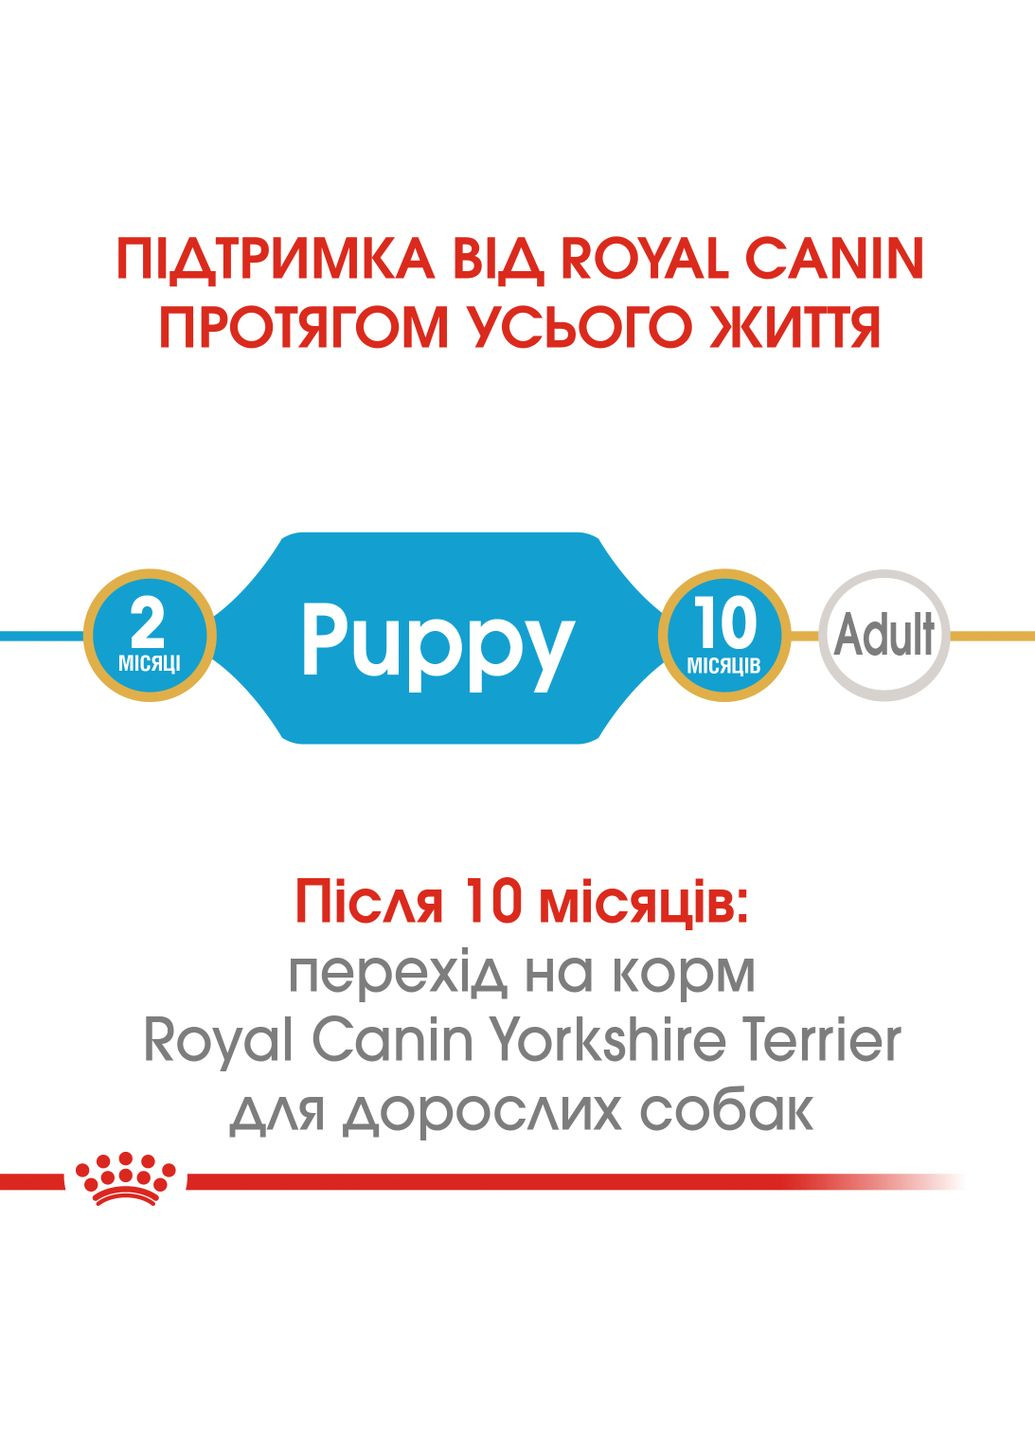 Сухой полнорационный корм для щенков Yorkshire Terrier Puppy породы йоркширский терьер века от Royal Canin (279565288)